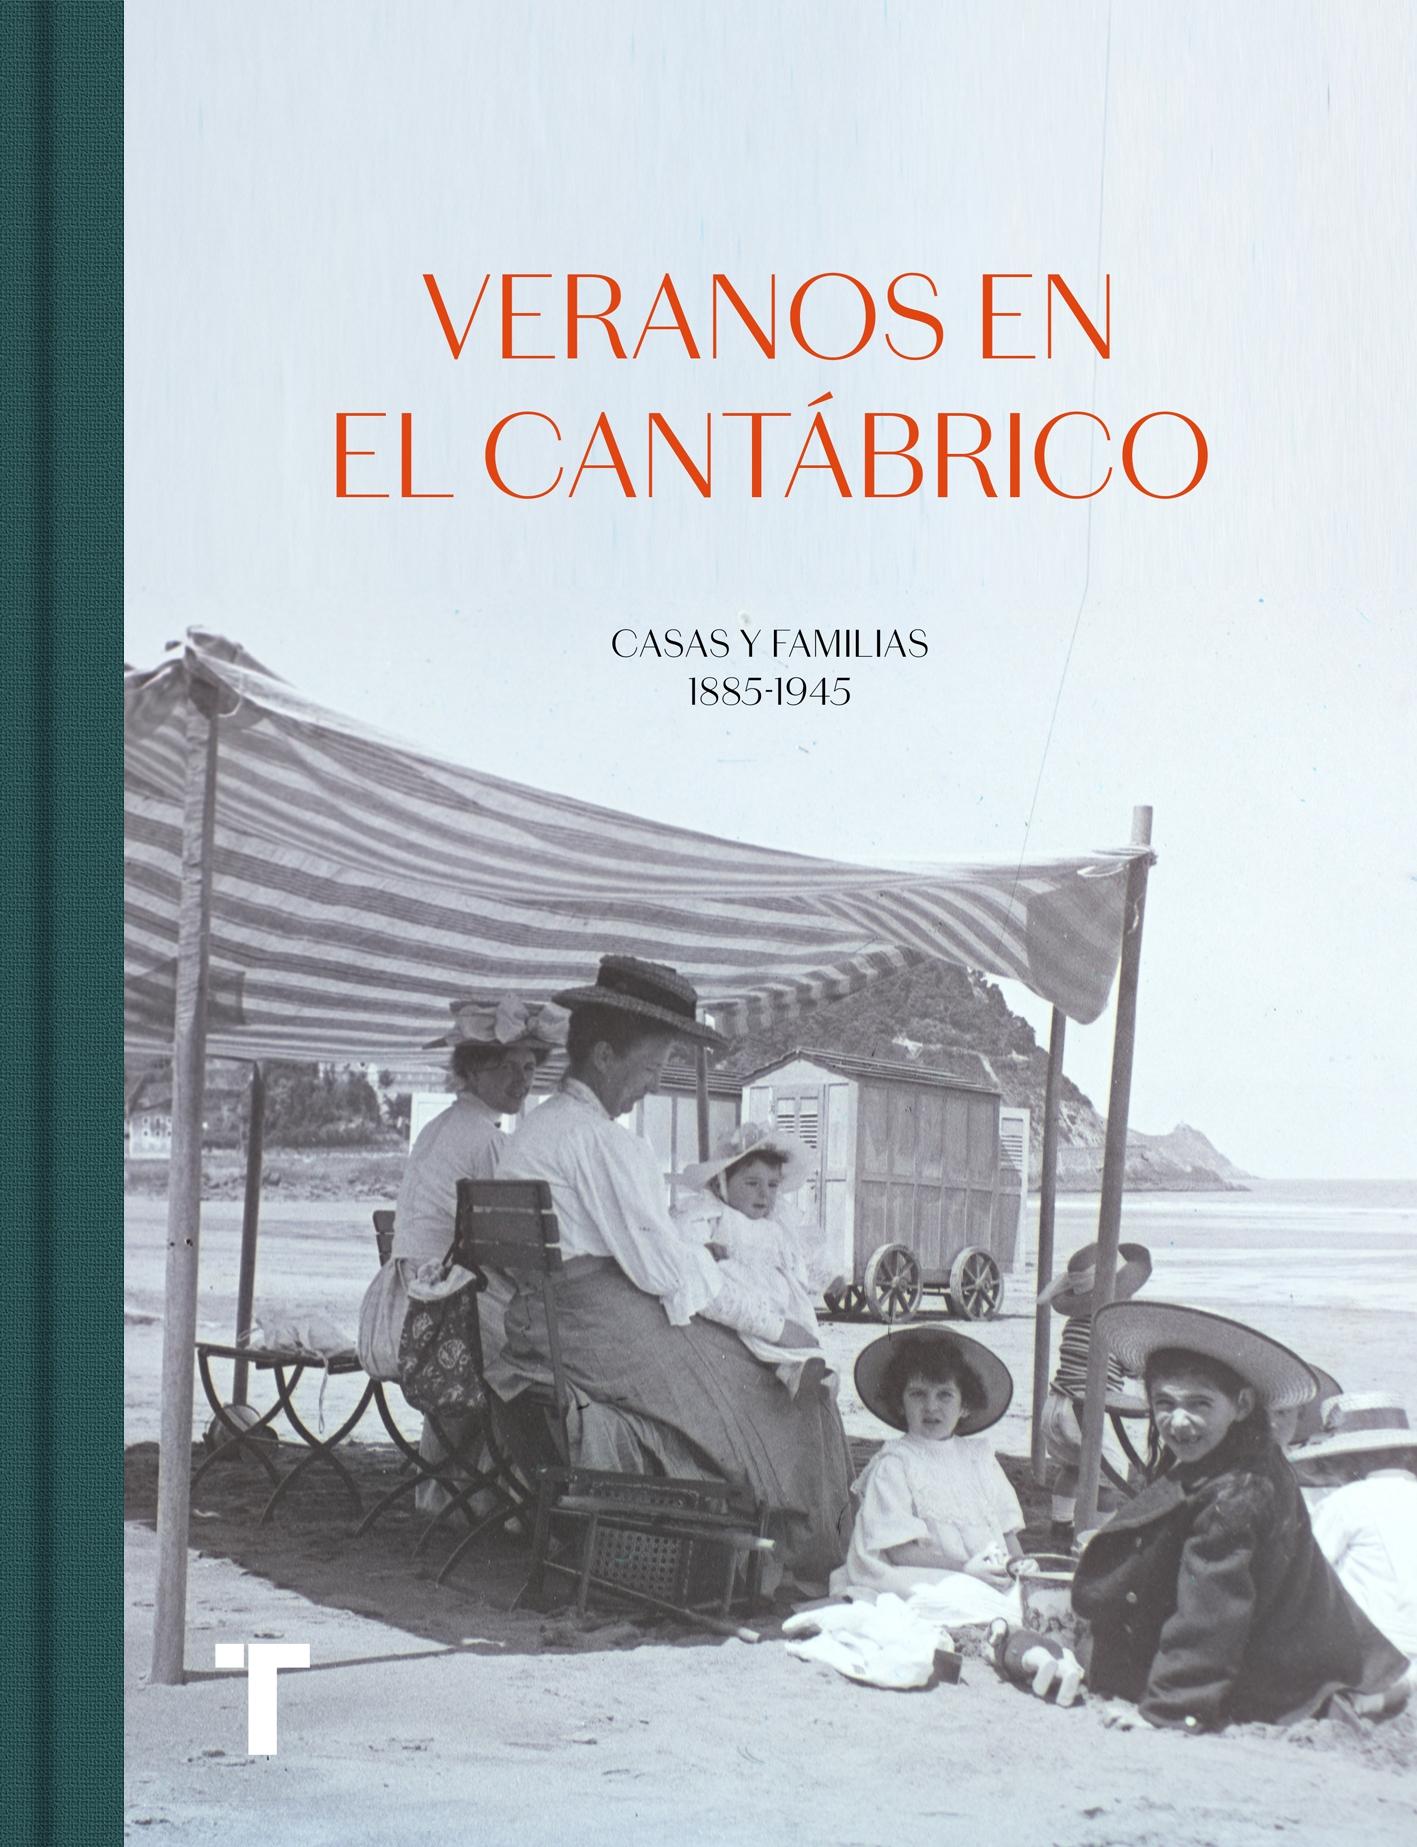 Veranos en el Cantábrico "Casas y familias 1885-1945". 